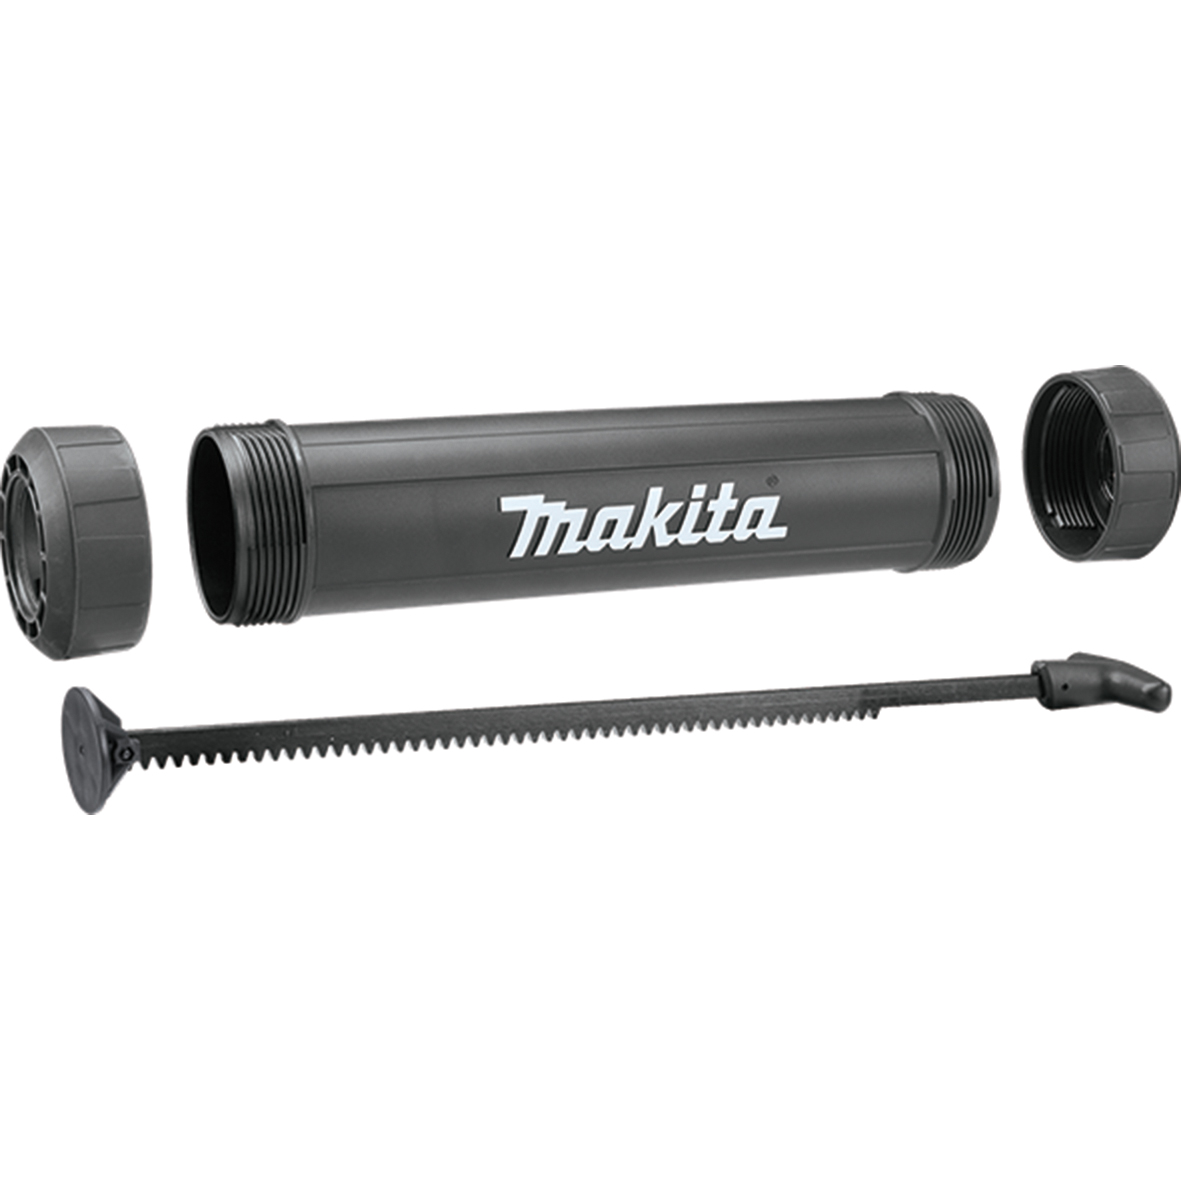 Makita 197195-9 Set de sujeción tubo para salchicha 800ml MAK-197195-9 | ACCESORIOS BATERÍA